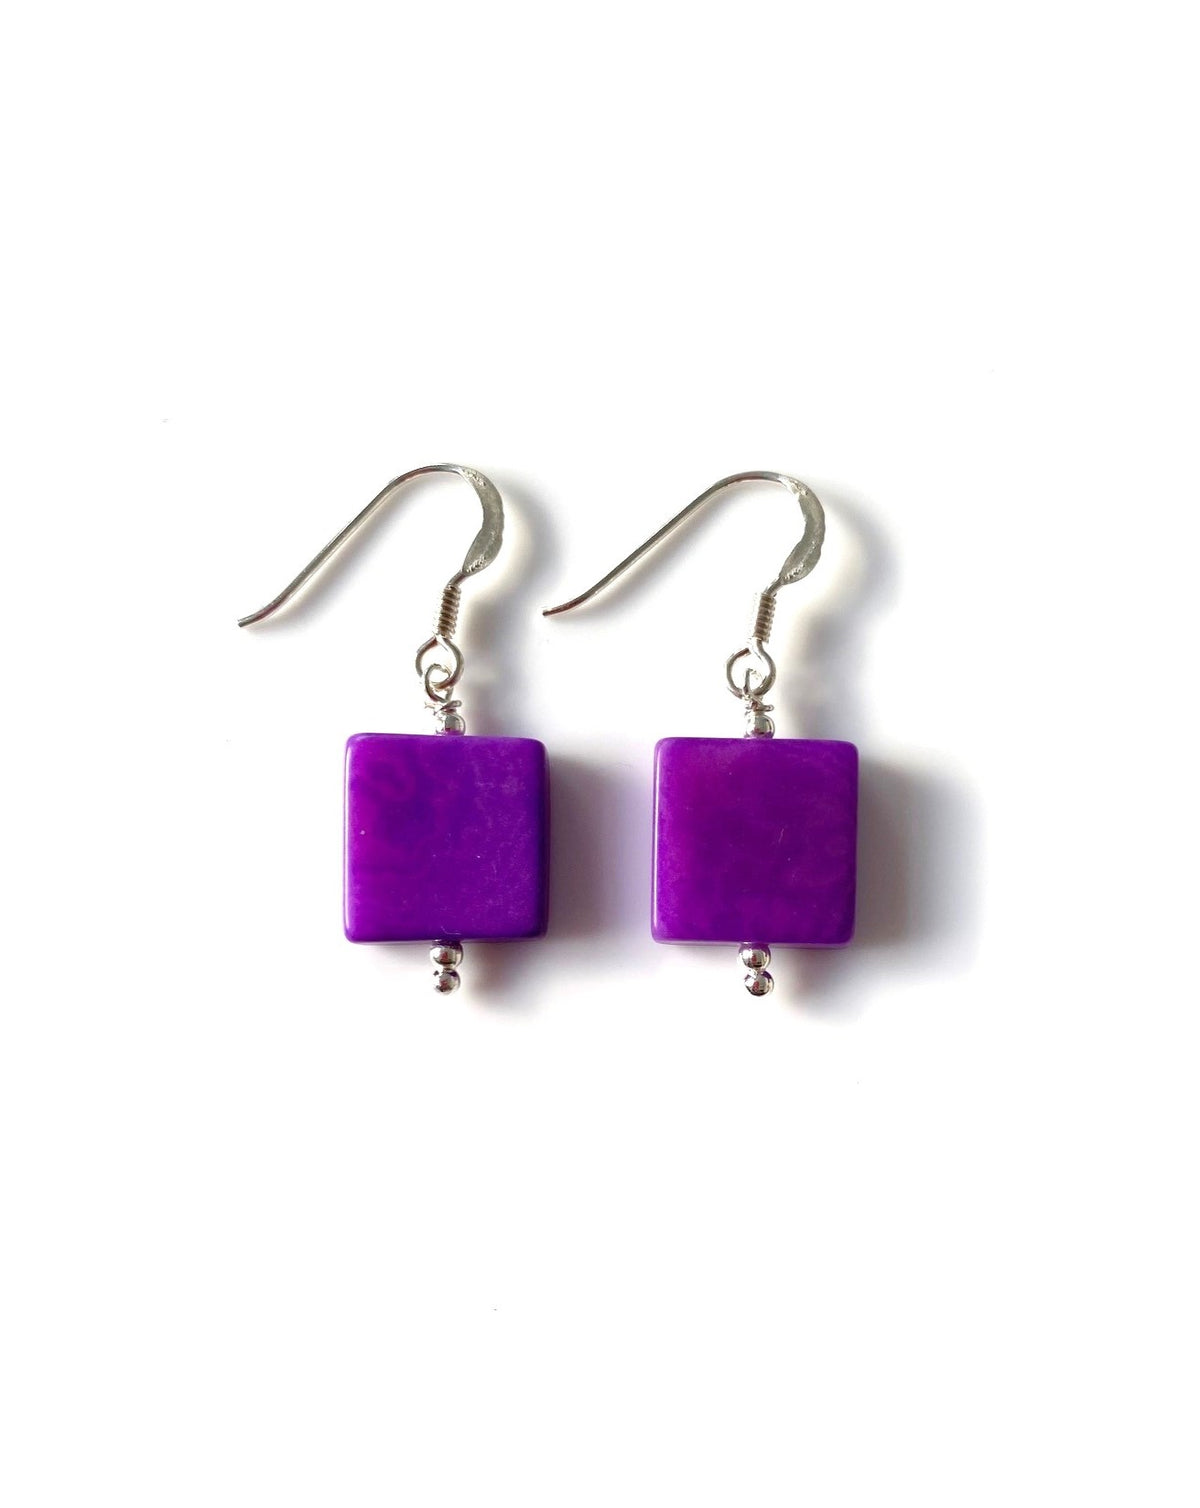 Cuadritos earrings (11mm) - Purple